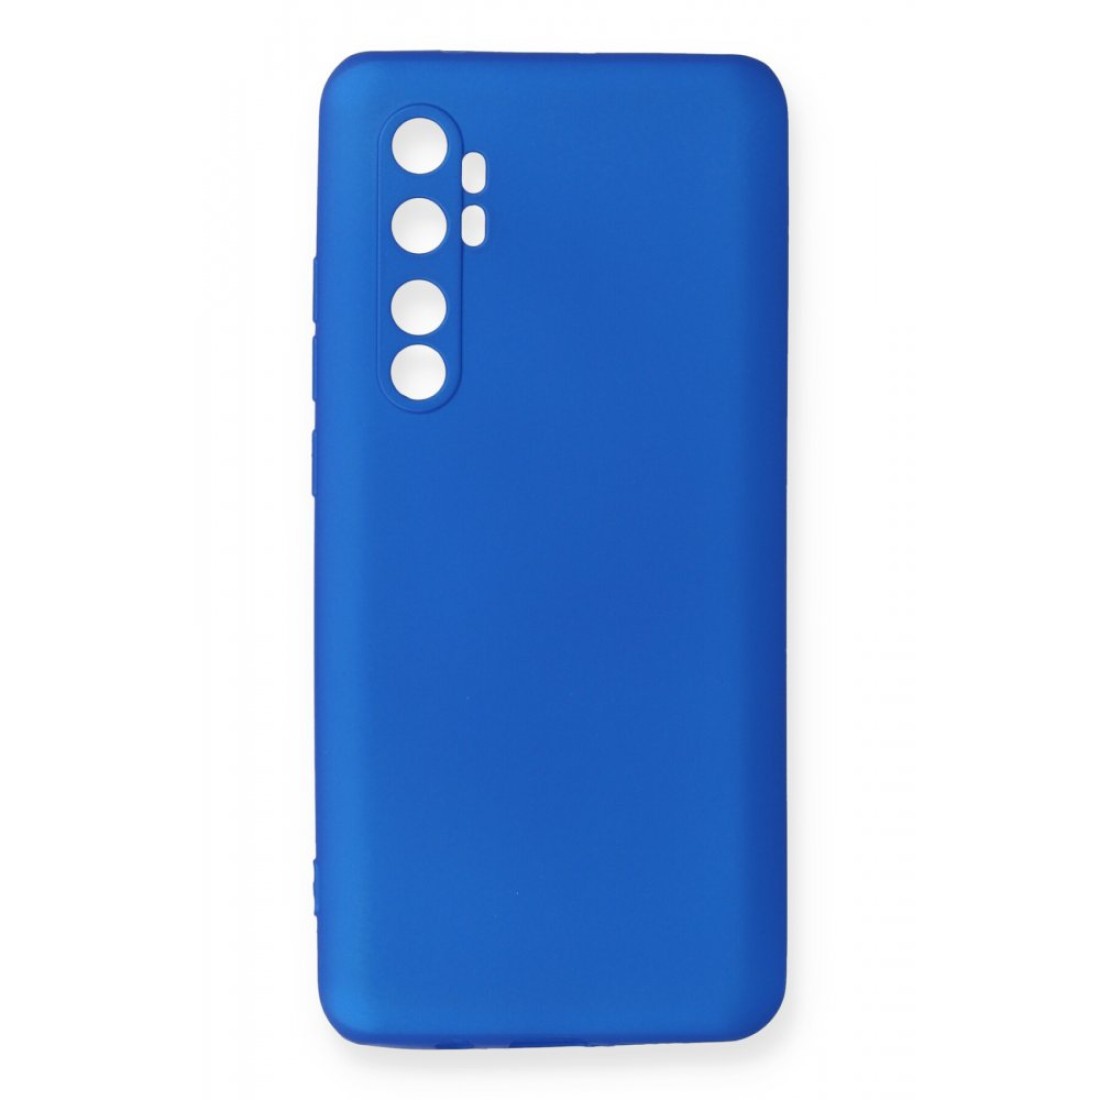 Xiaomi Mi Note 10 Lite Kılıf Premium Rubber Silikon - Mavi